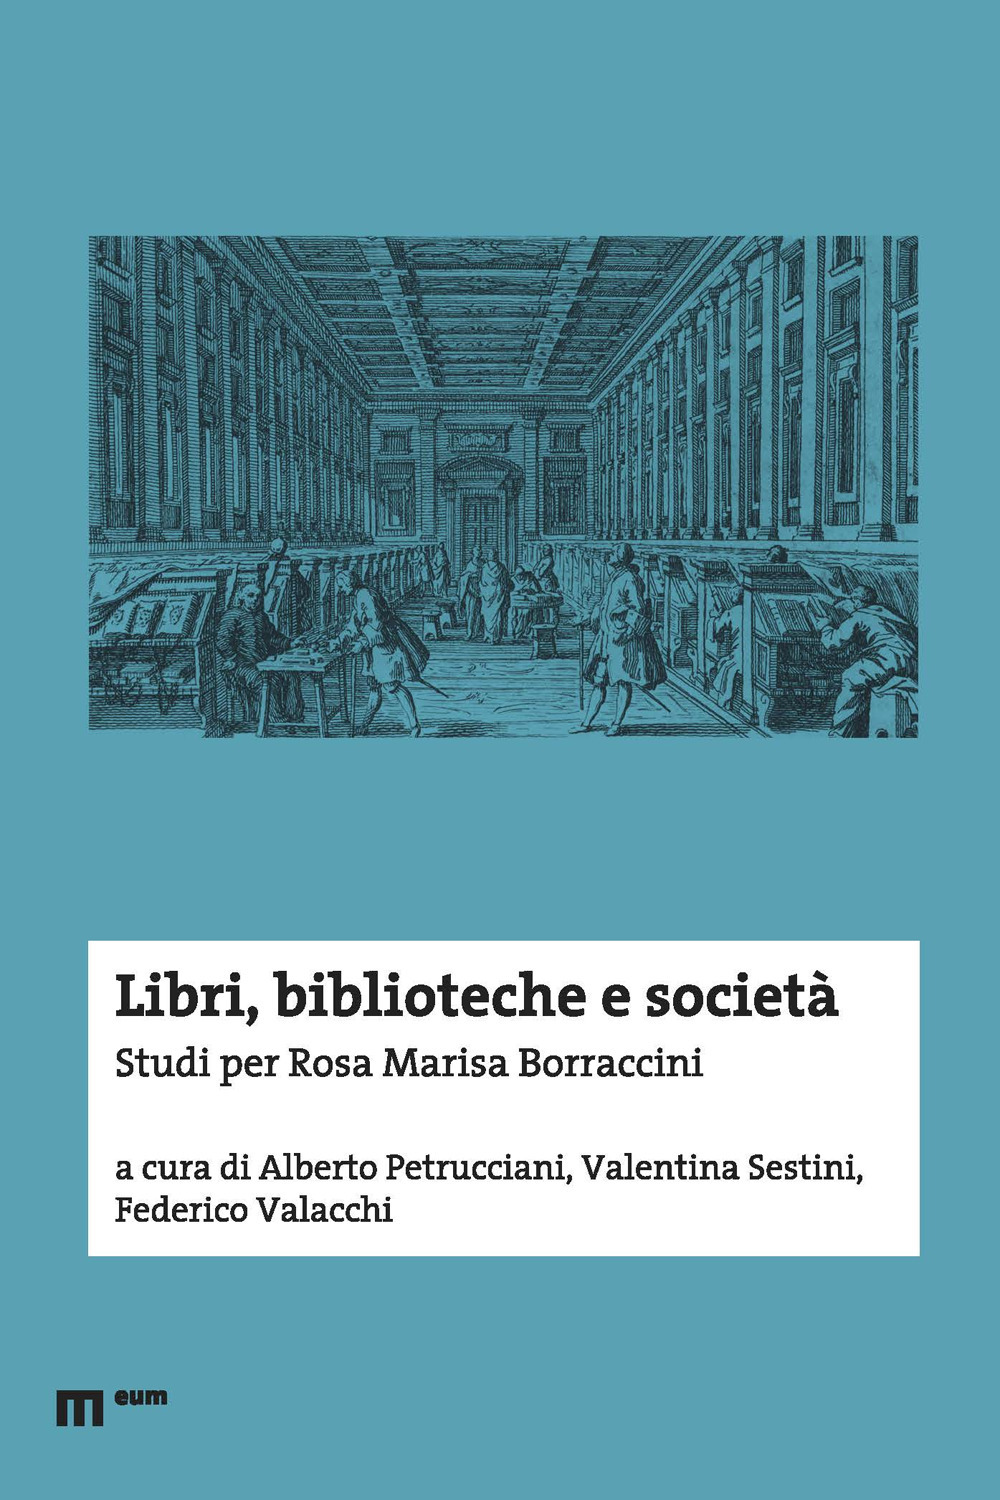 Libri, biblioteche e società. Studi per Rosa Marisa Borraccini